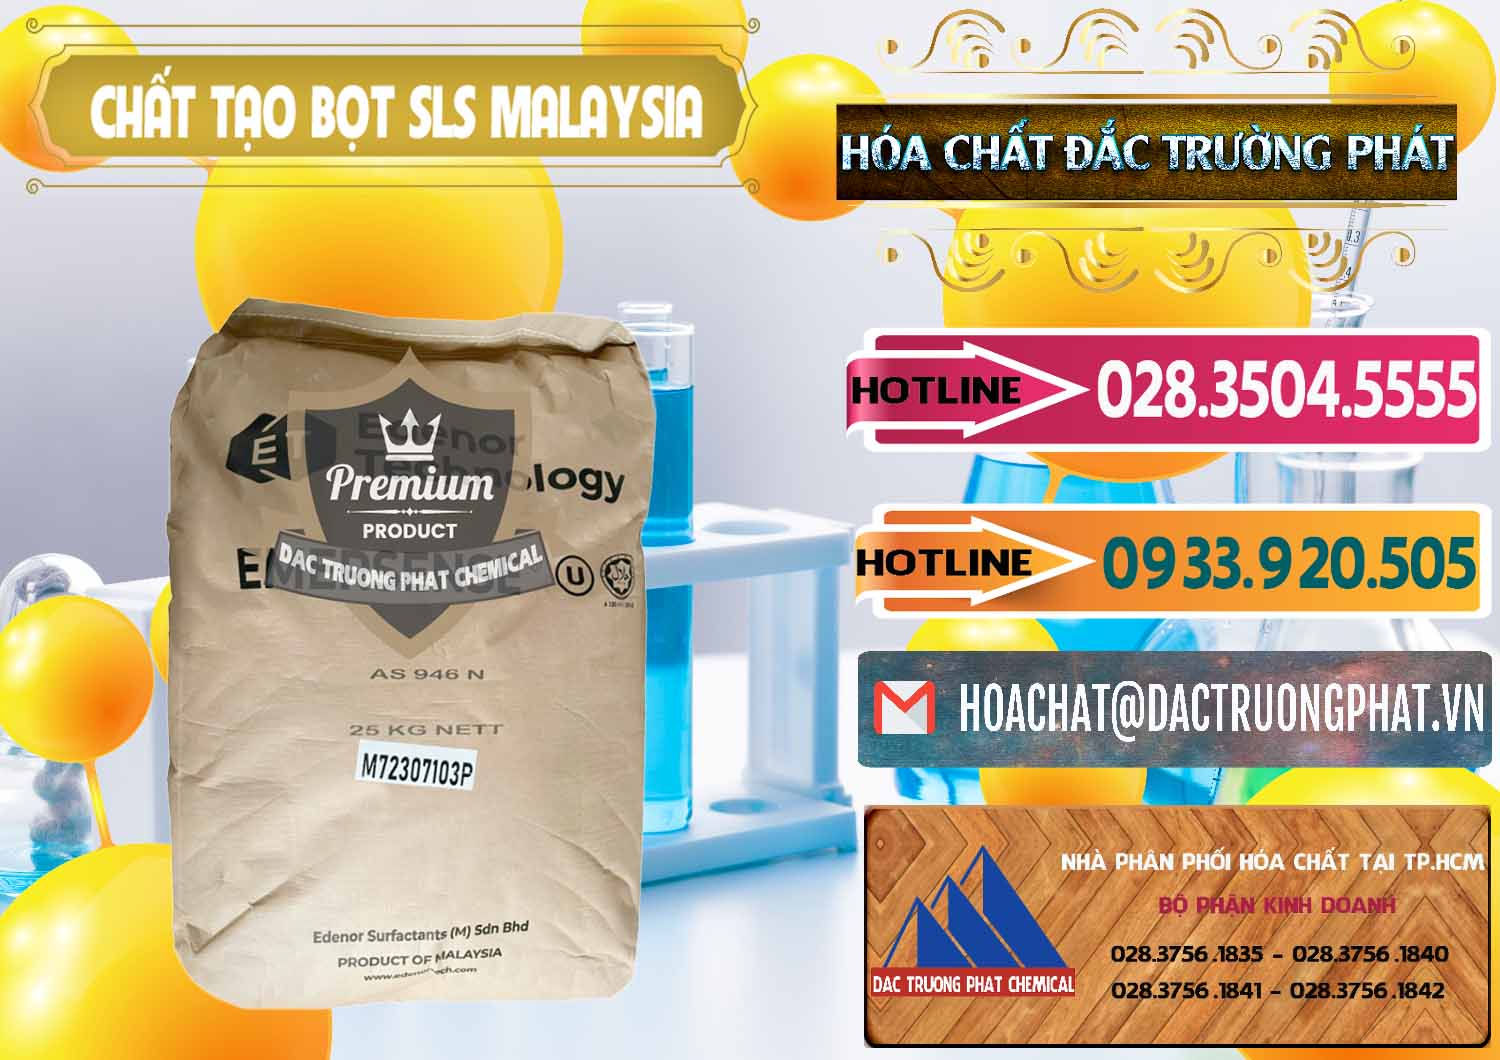 Nơi phân phối và bán Chất Tạo Bọt SLS Emersense Mã Lai Malaysia - 0381 - Cty chuyên phân phối & kinh doanh hóa chất tại TP.HCM - dactruongphat.vn